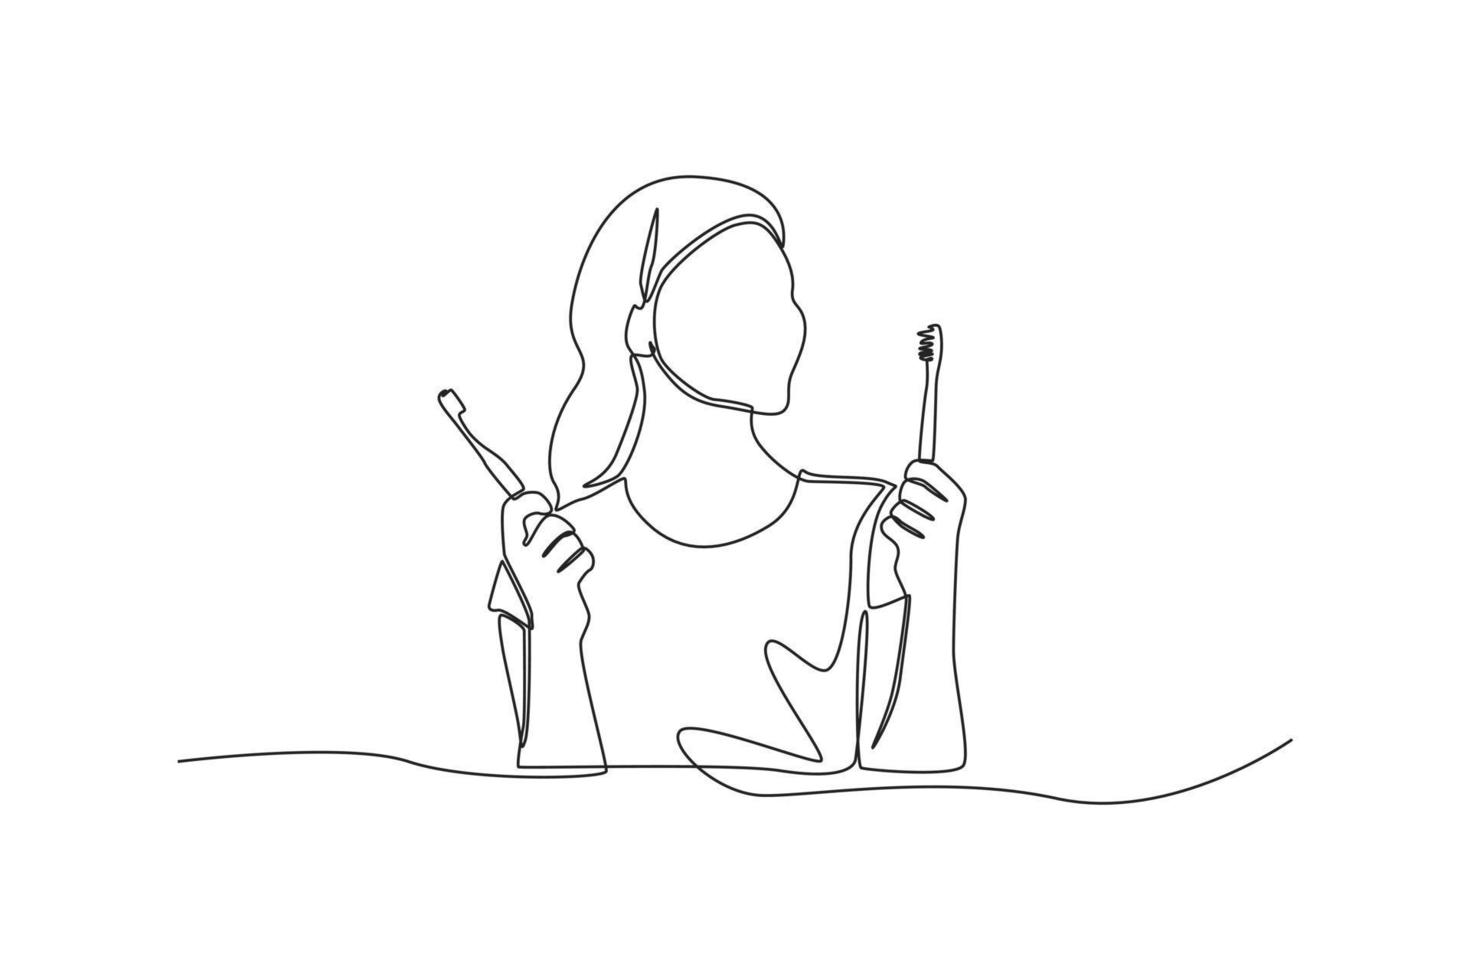 una sola línea dibujando a una niña usando un cepillo de dientes de bambú. concepto de cero residuos. ilustración de vector gráfico de diseño de dibujo de línea continua.